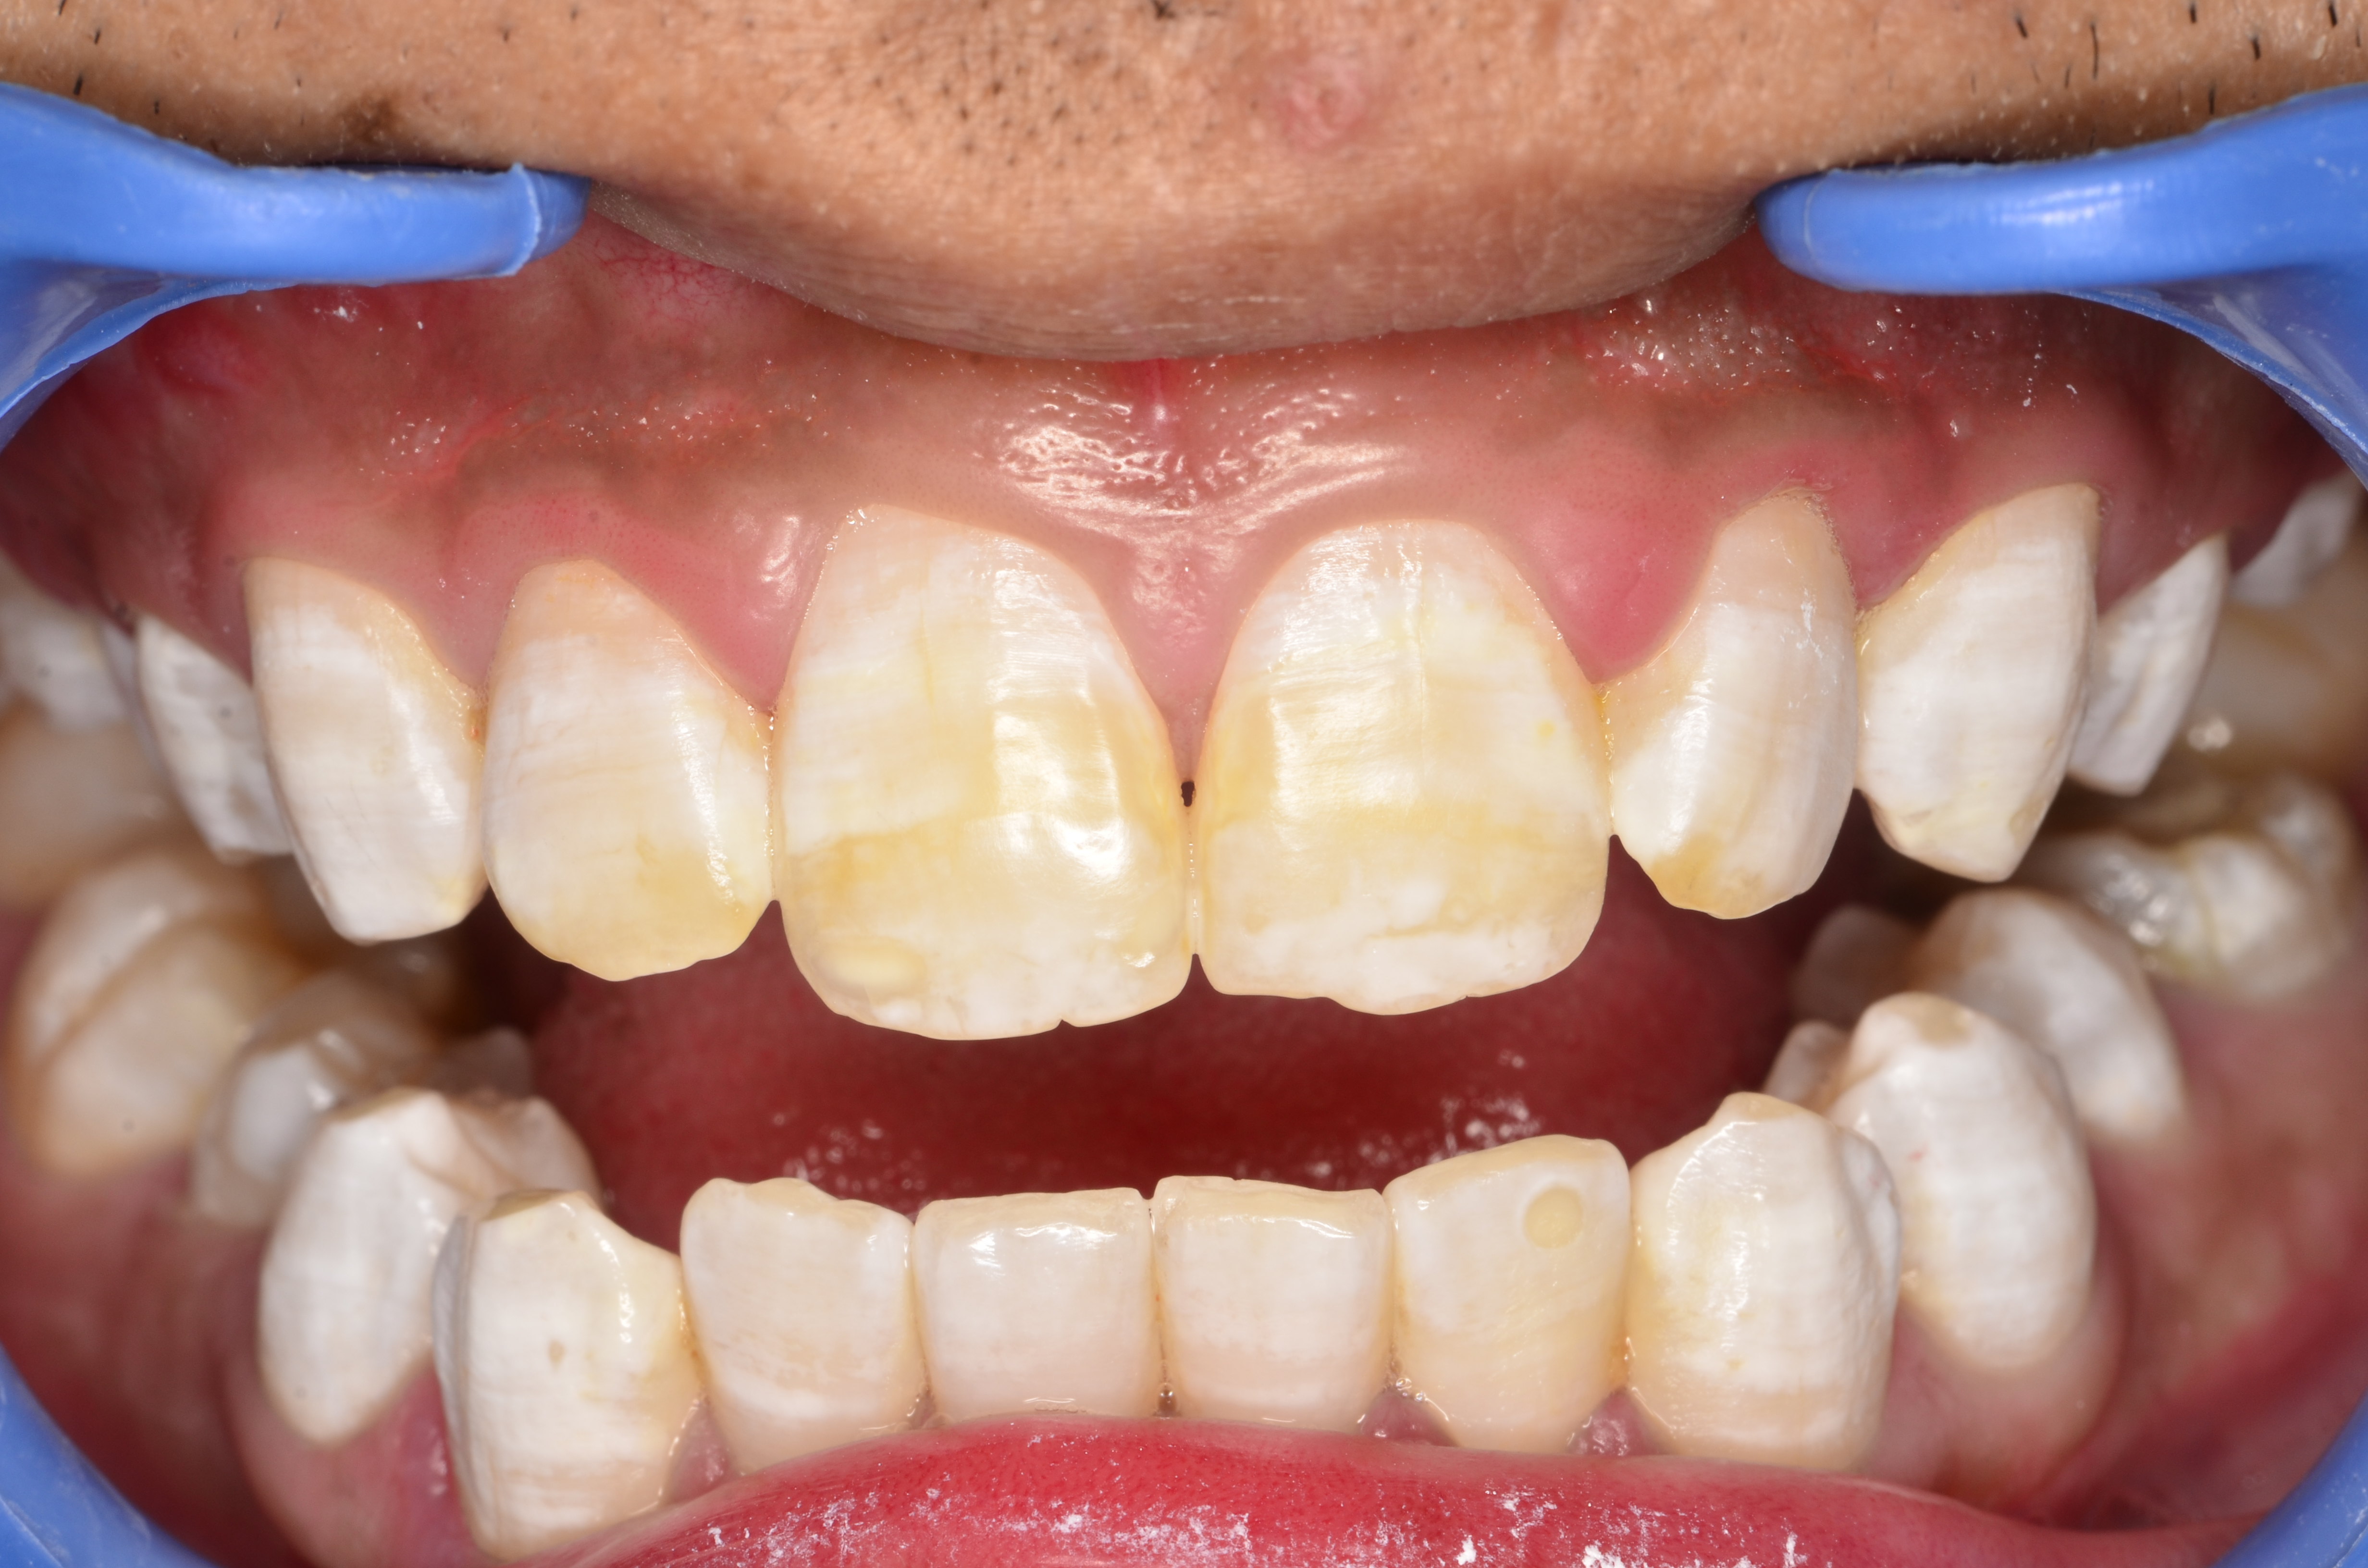 患者男,21岁患者自述:生活地区水质含氟量高,乳牙颜色基本正常,换牙后